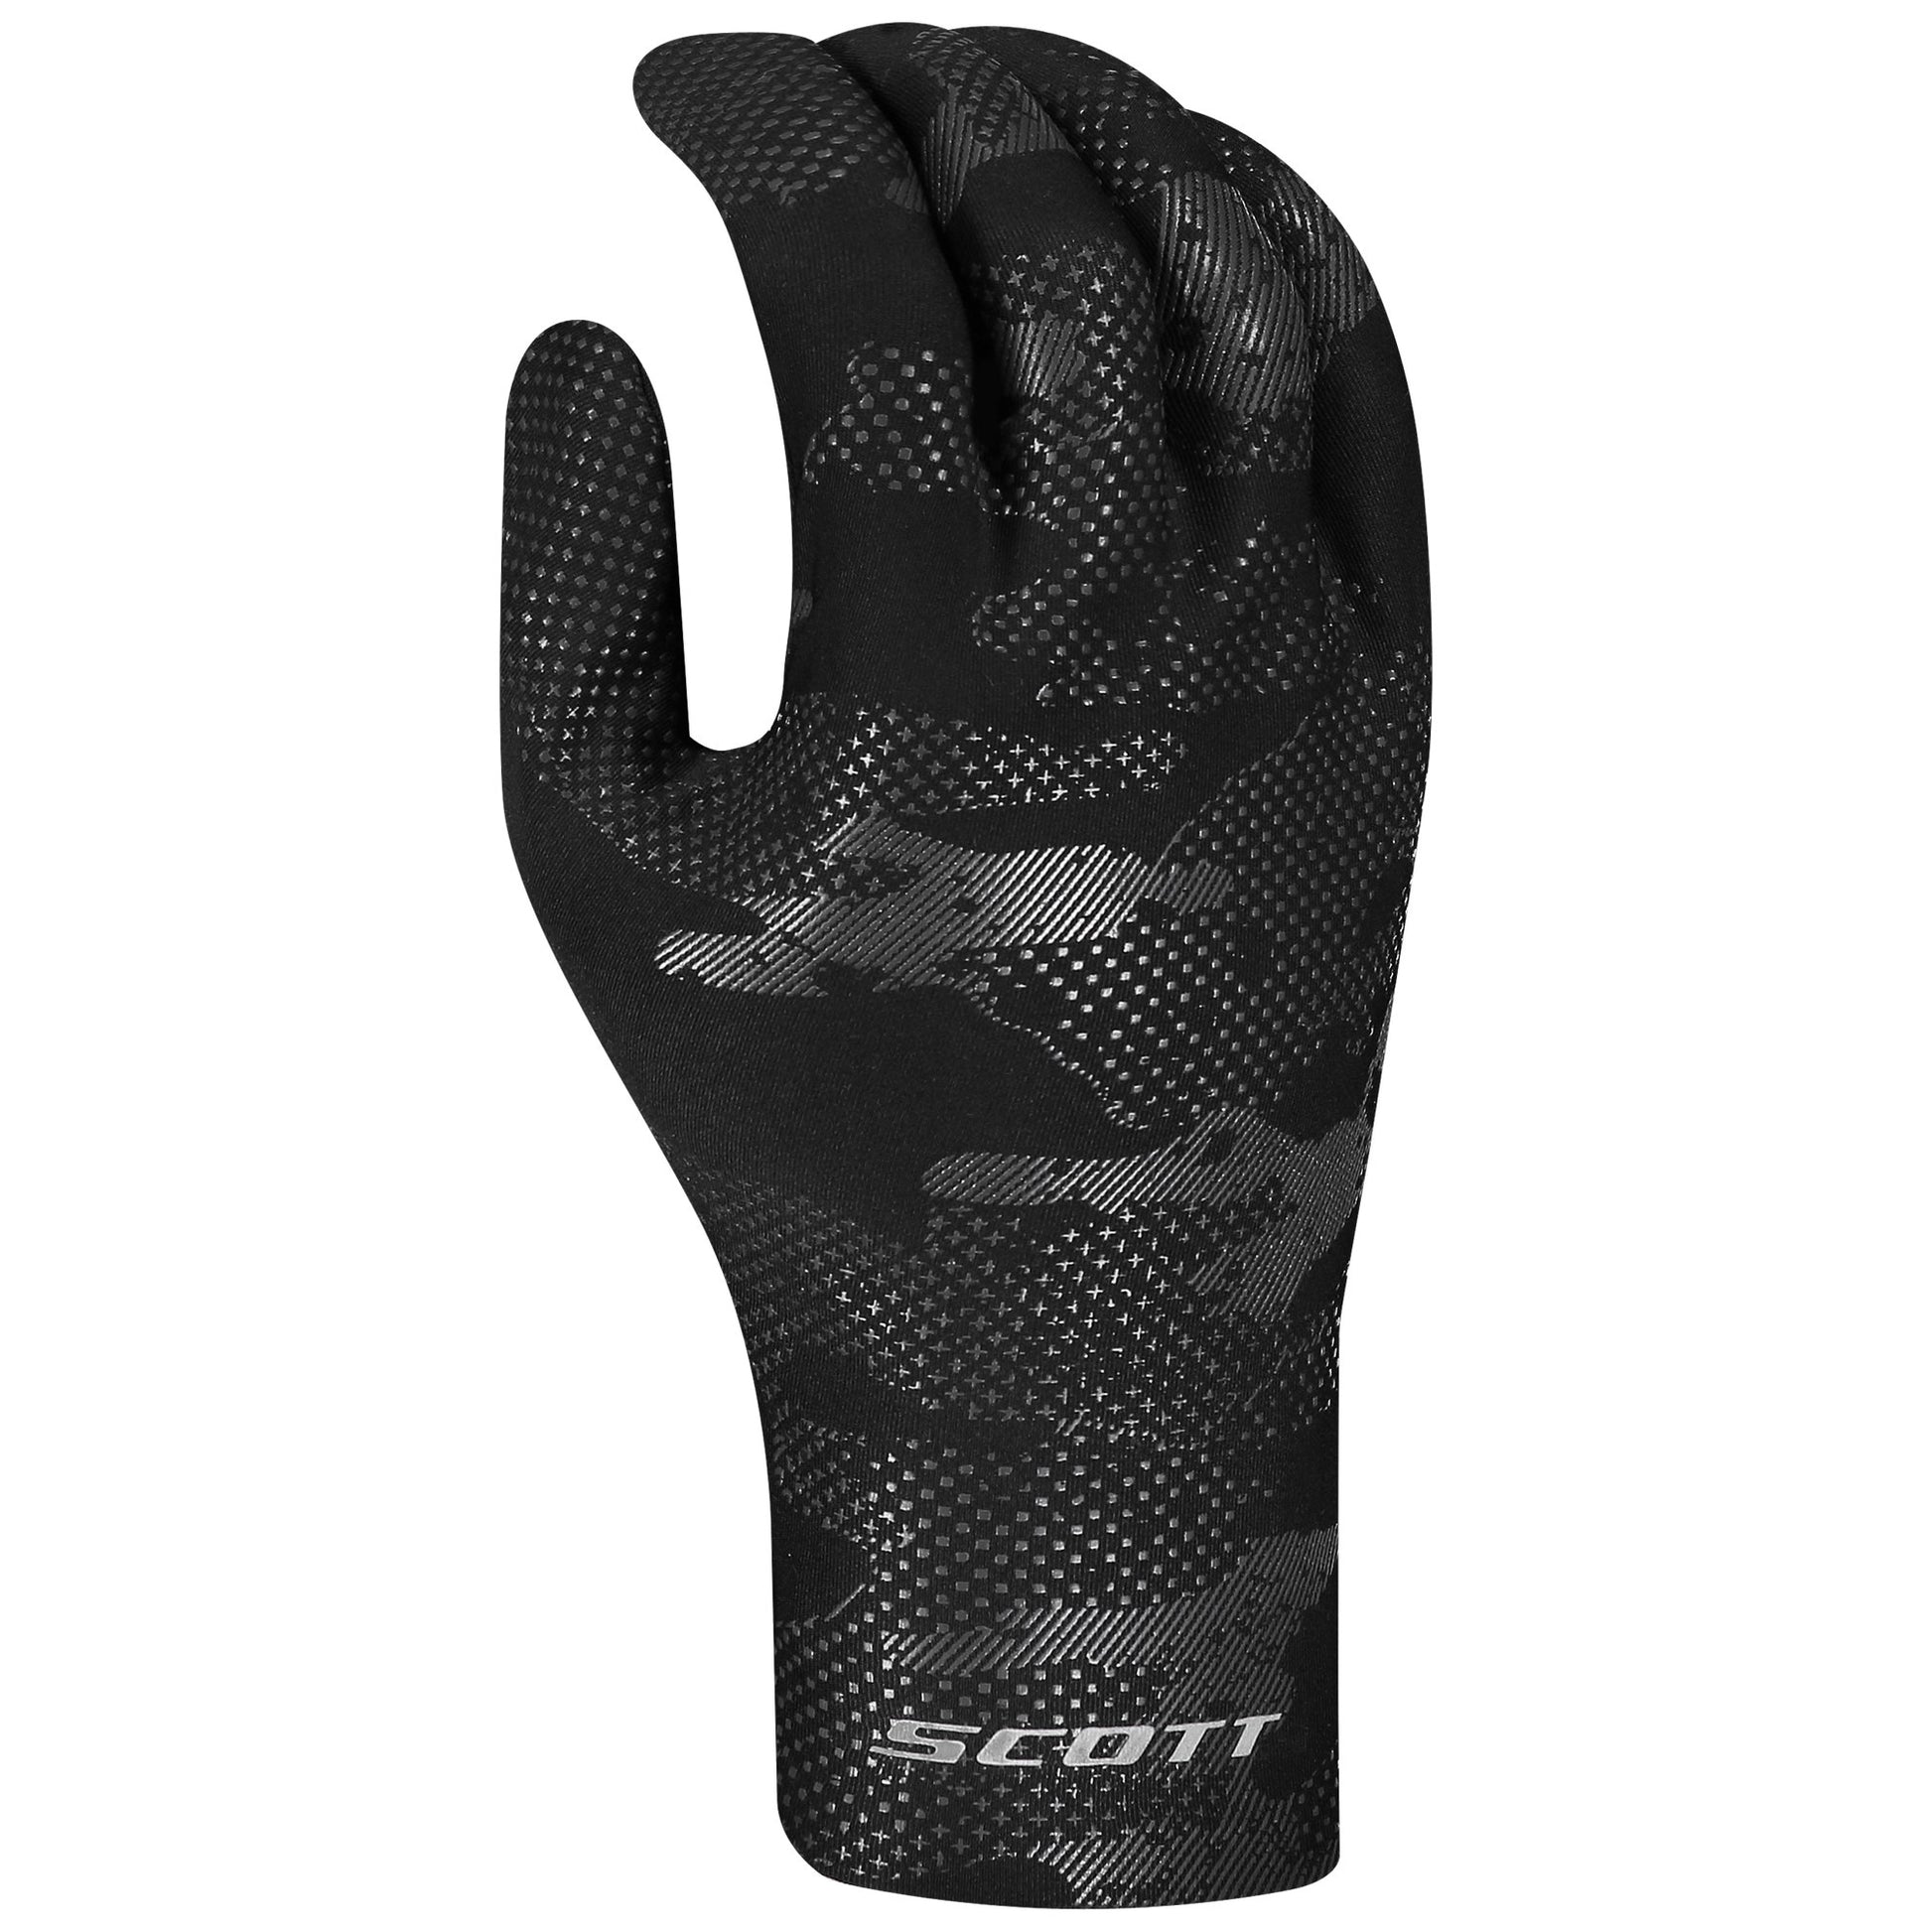 Scott Winter Stretch LF Glove Black Snow Gloves